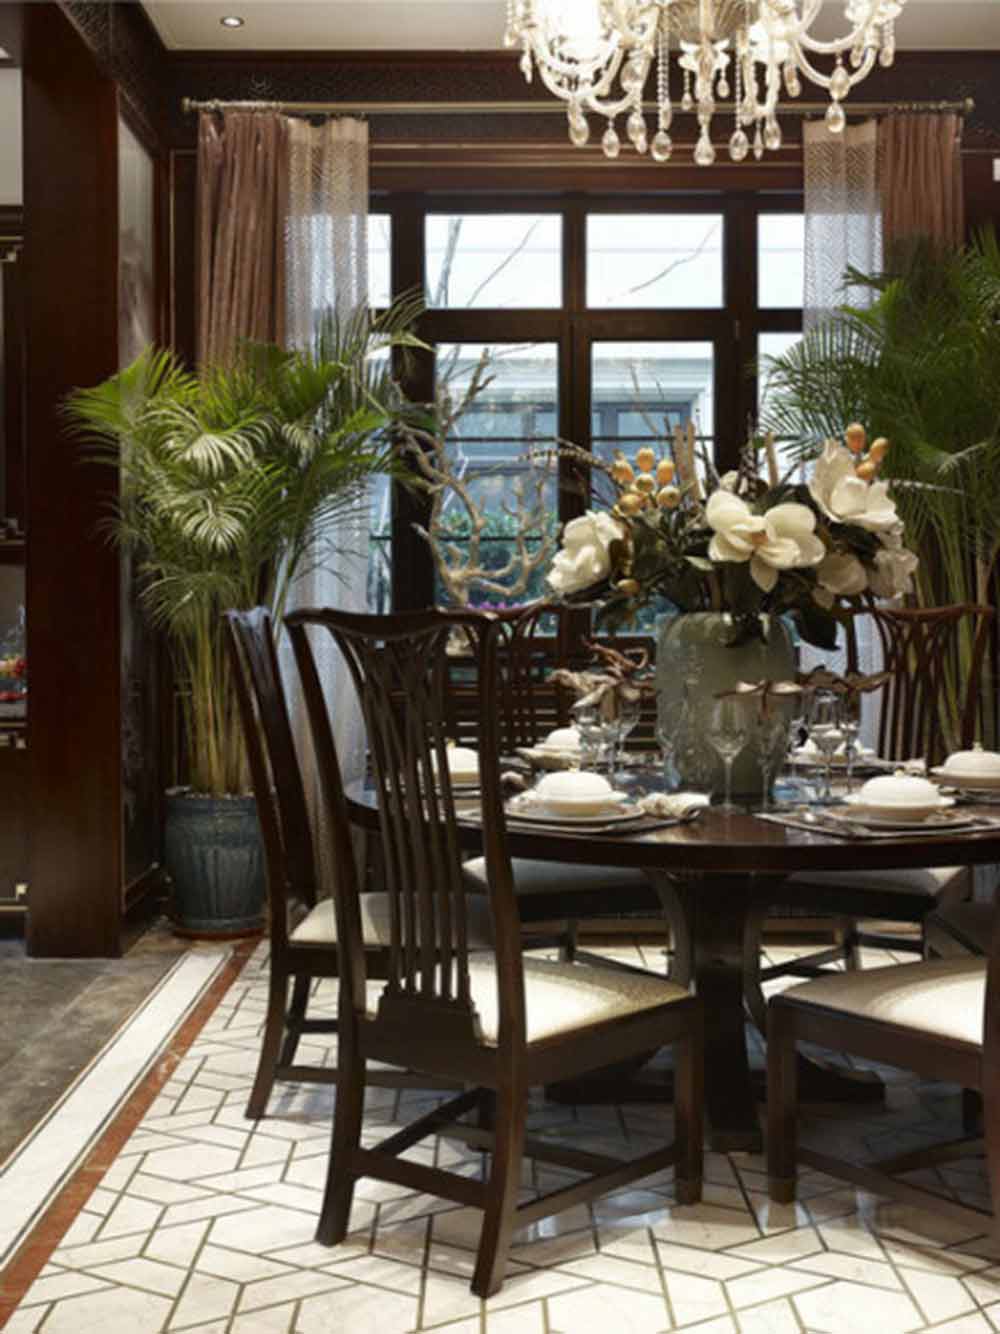 餐座椅造型简约而秀气，凸显中国式的大方和文雅。餐厅两旁对称摆放的绿植为大面积的原木色环境添加了几分生气。